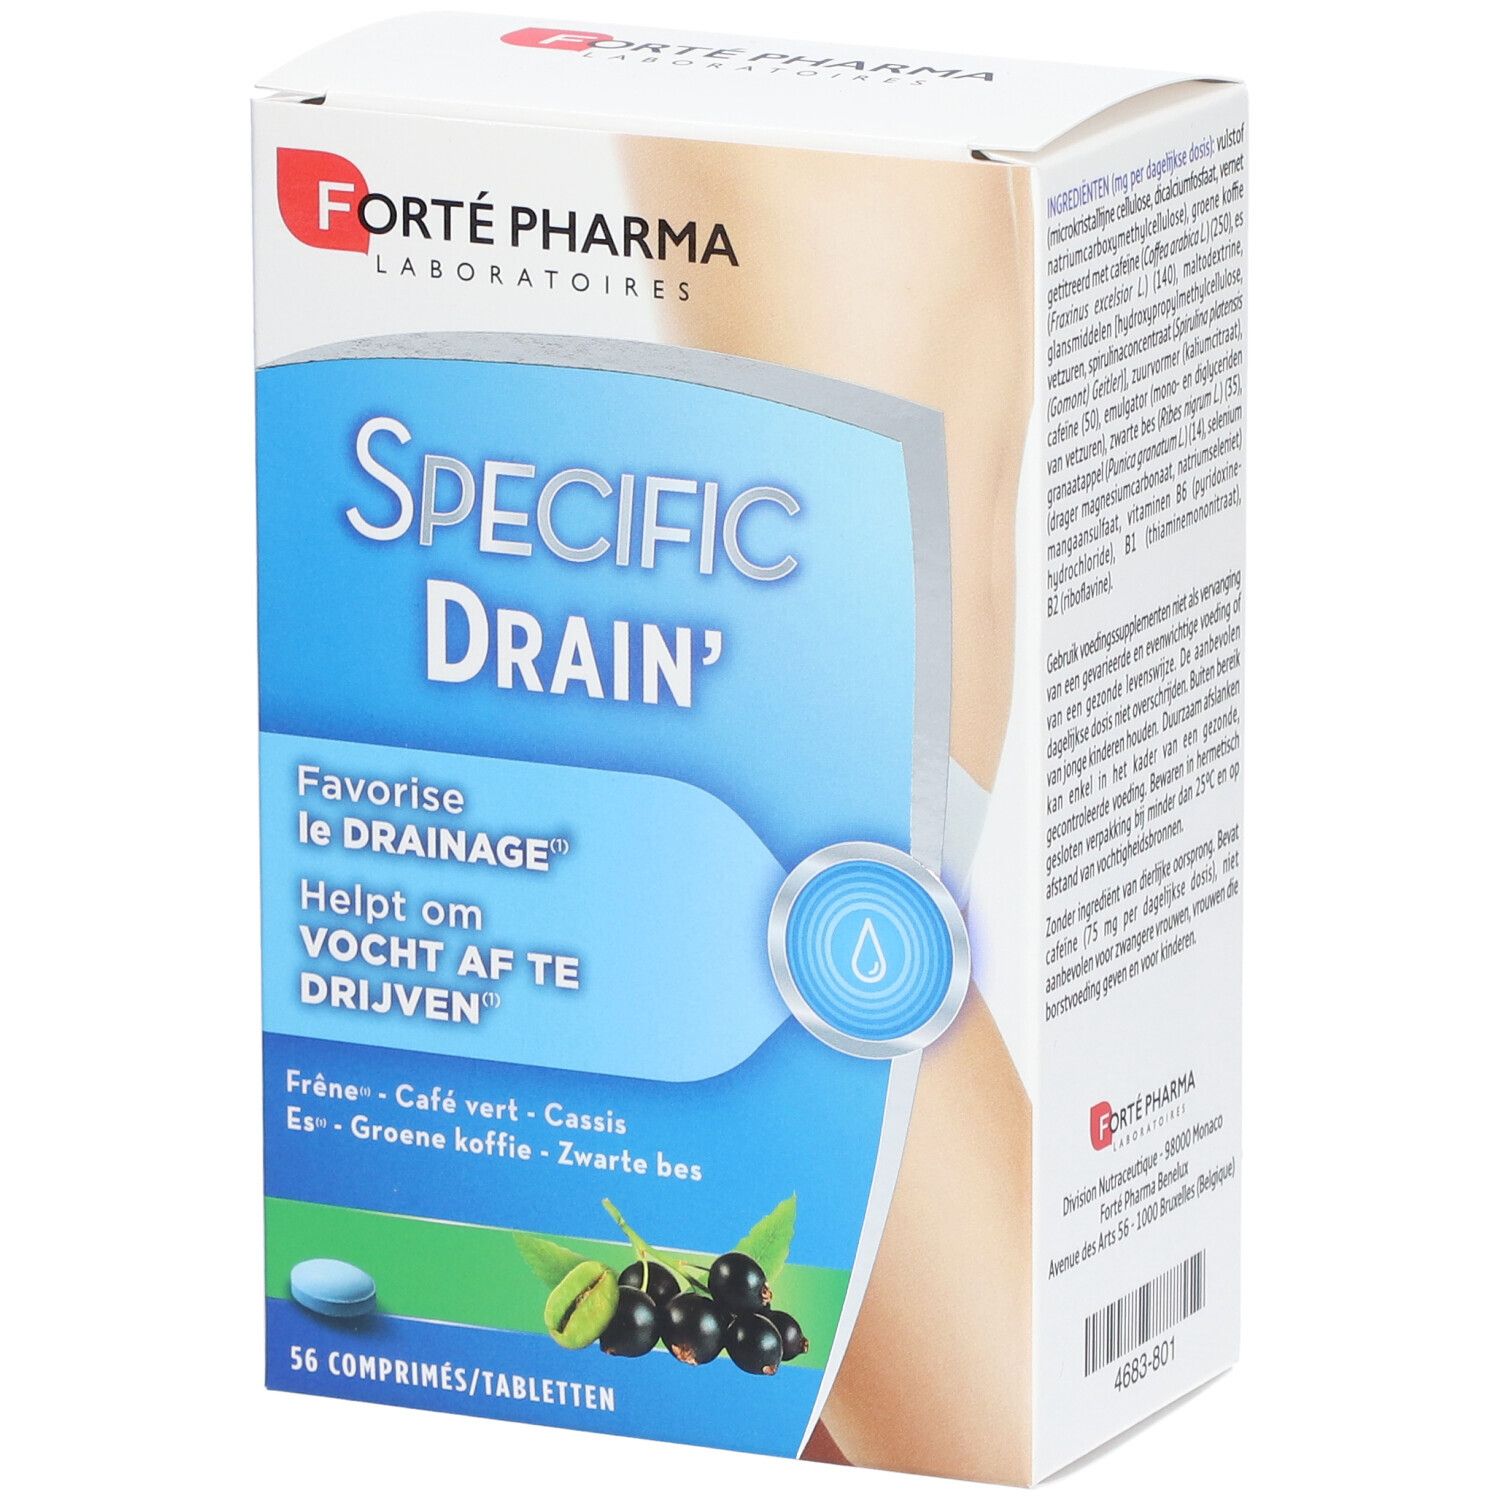 Forté Pharma Specific Drain